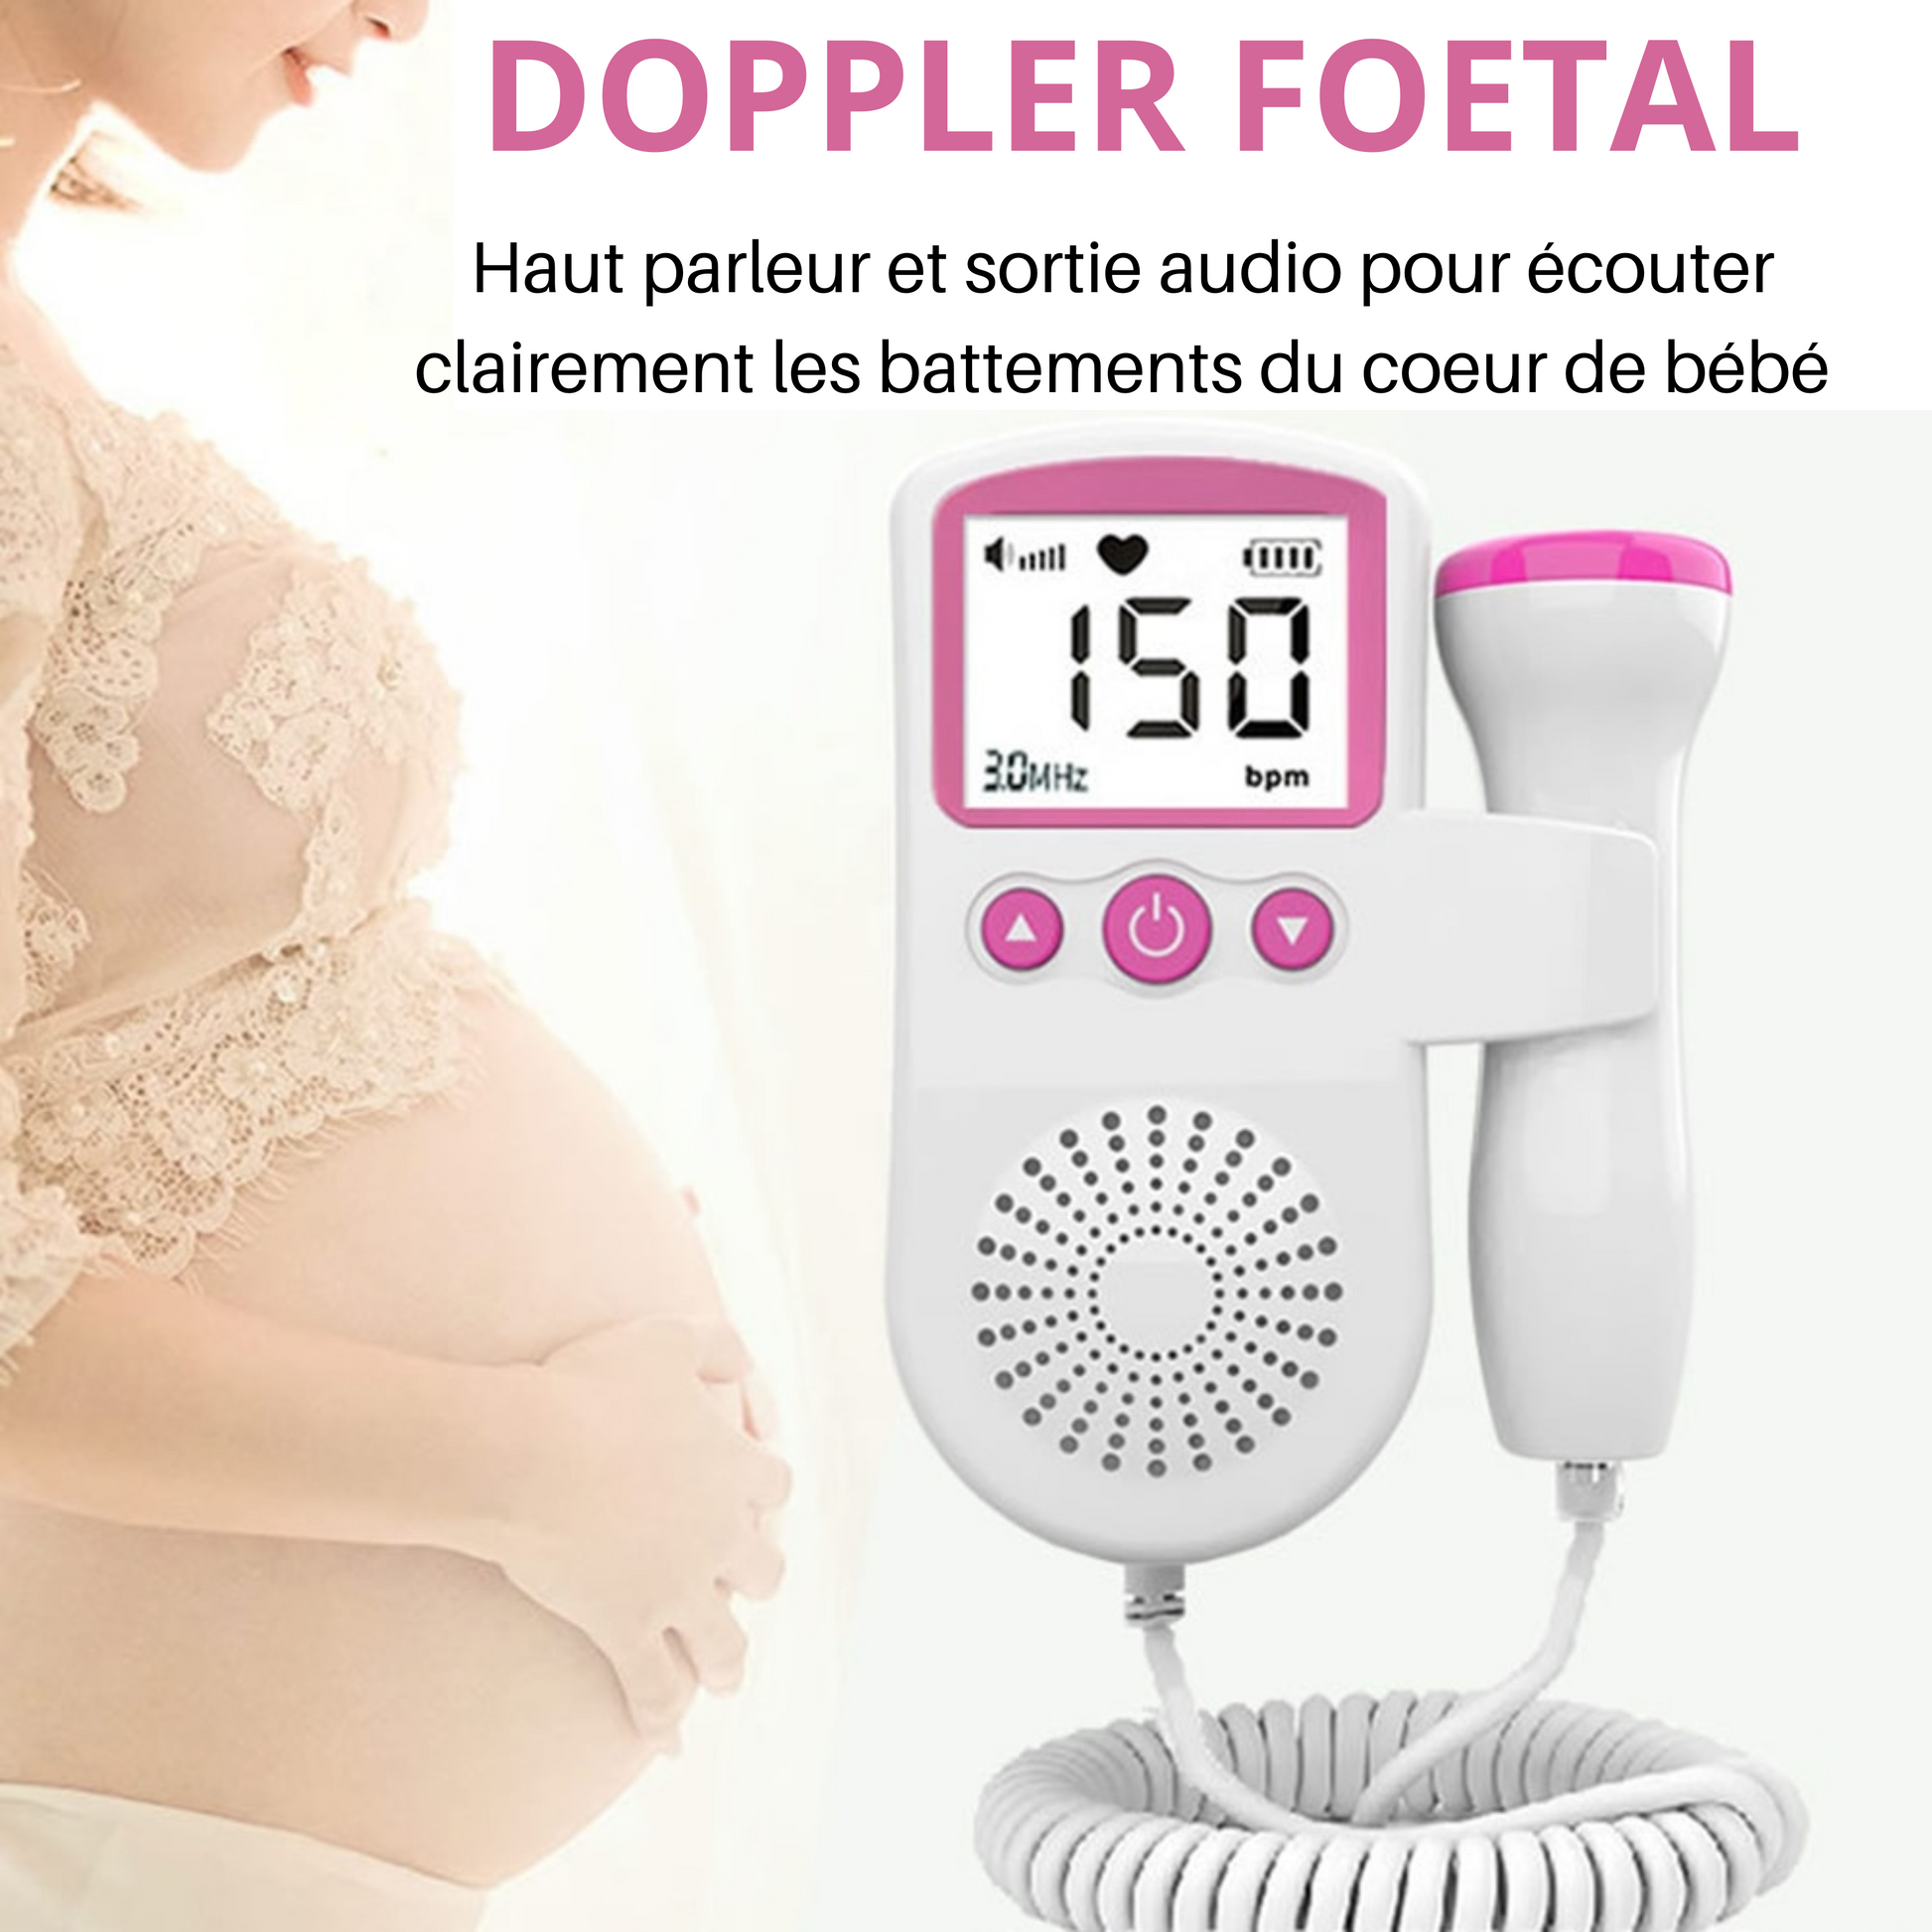 Doppler fœtal DG2 – Doppler Grossesse